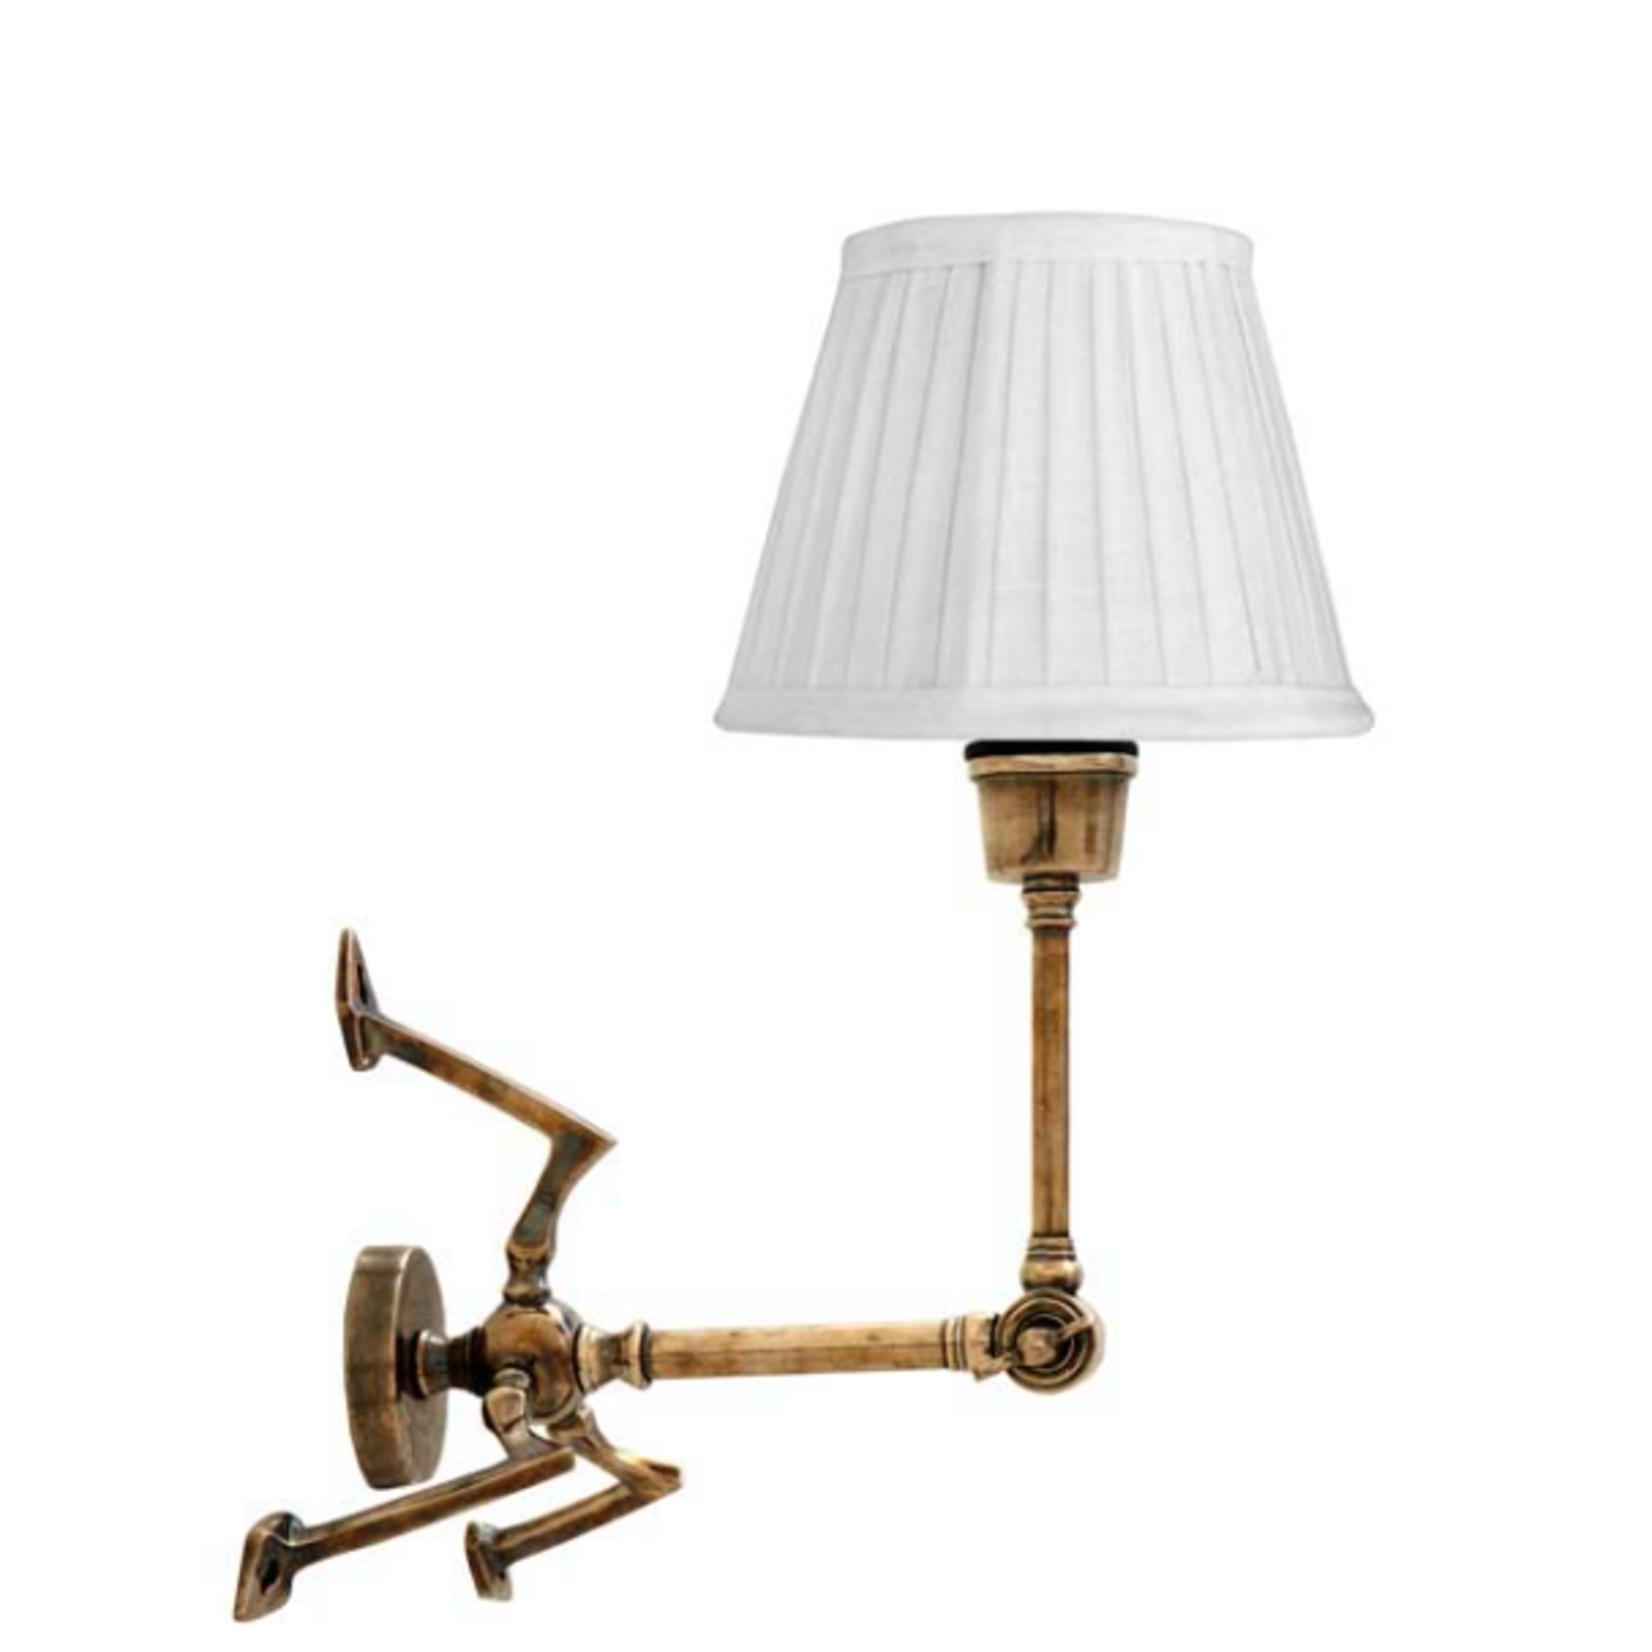 EICHHOLTZ LAMP WALL SPIDER ANTIQUE BRASS